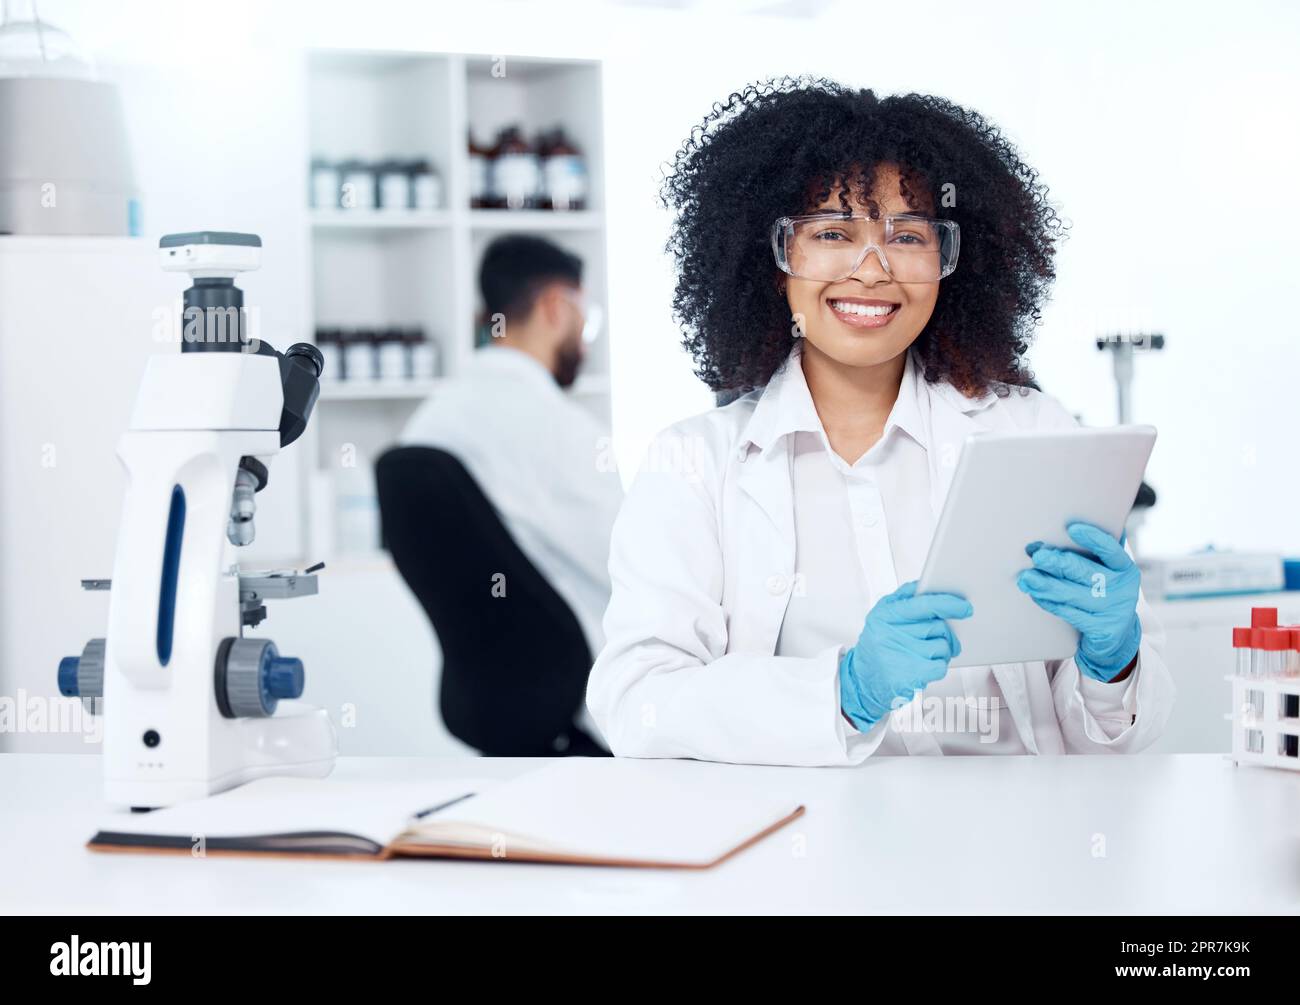 Portrait d'un jeune scientifique médical afro-américain heureux avec un afro utilisant une tablette numérique pour enregistrer les résultats de test à partir d'un microscope. Chimiste de race mixte découvrant une cure de vaccin dans un laboratoire Banque D'Images